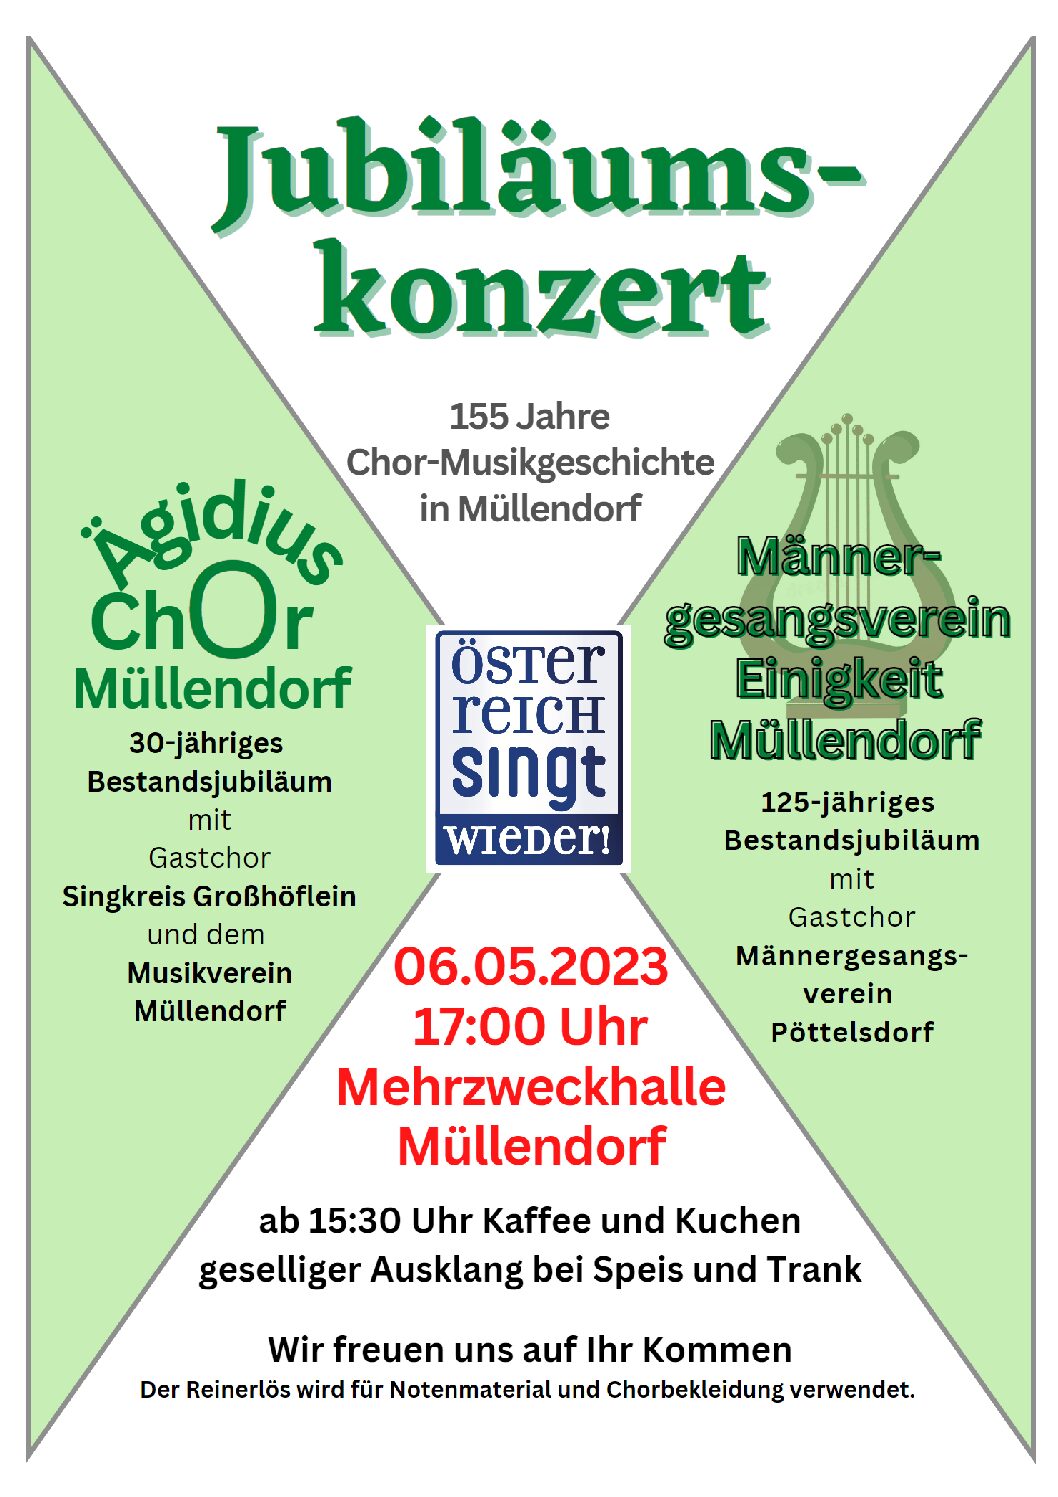 Jubiläumskonzert 155 Jahre Chor-Musikgeschichte in Müllendorf